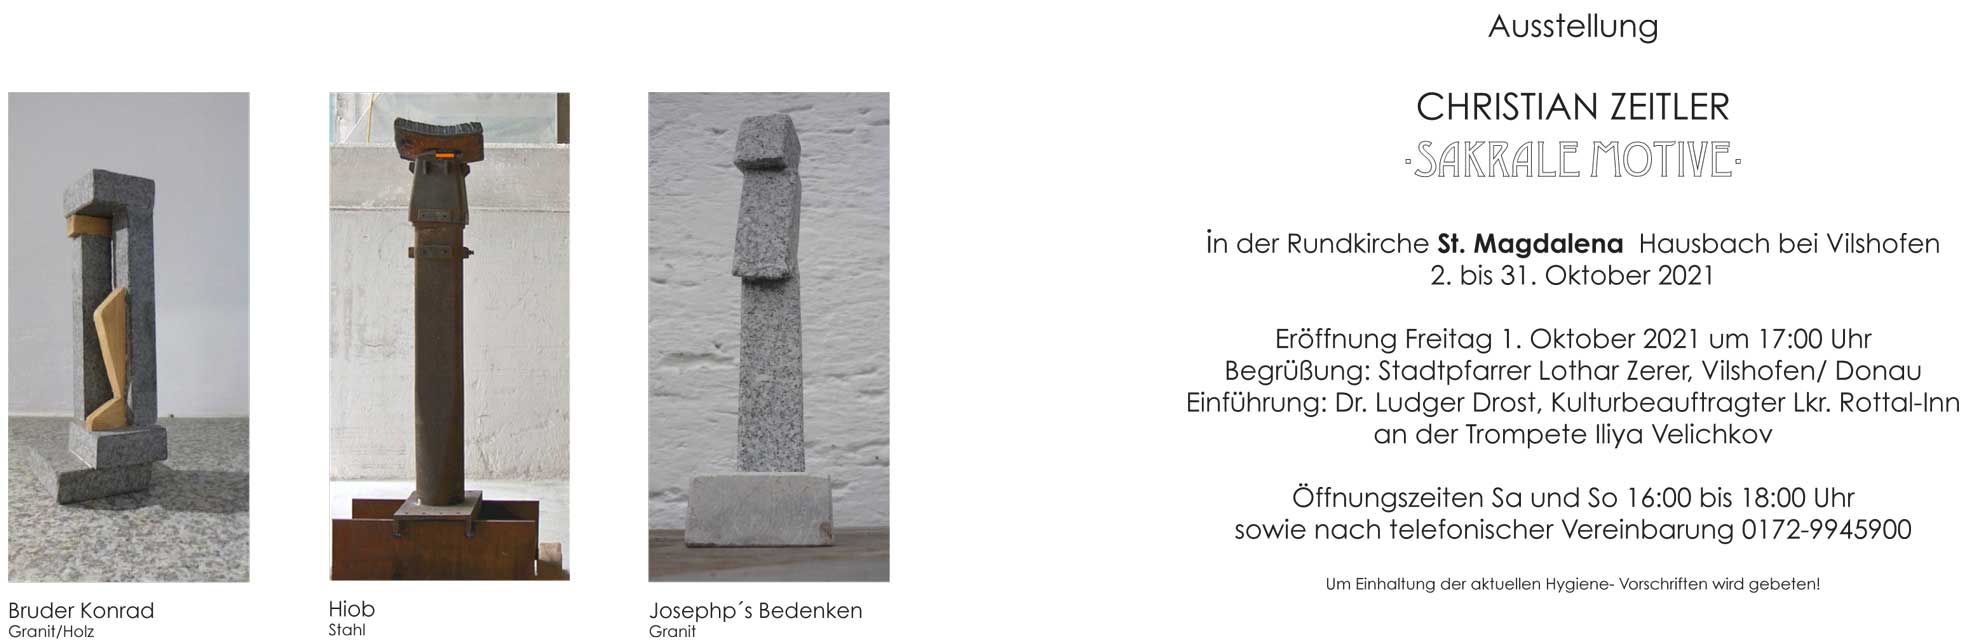 Christian Zeitler Ausstellung 1.10.21